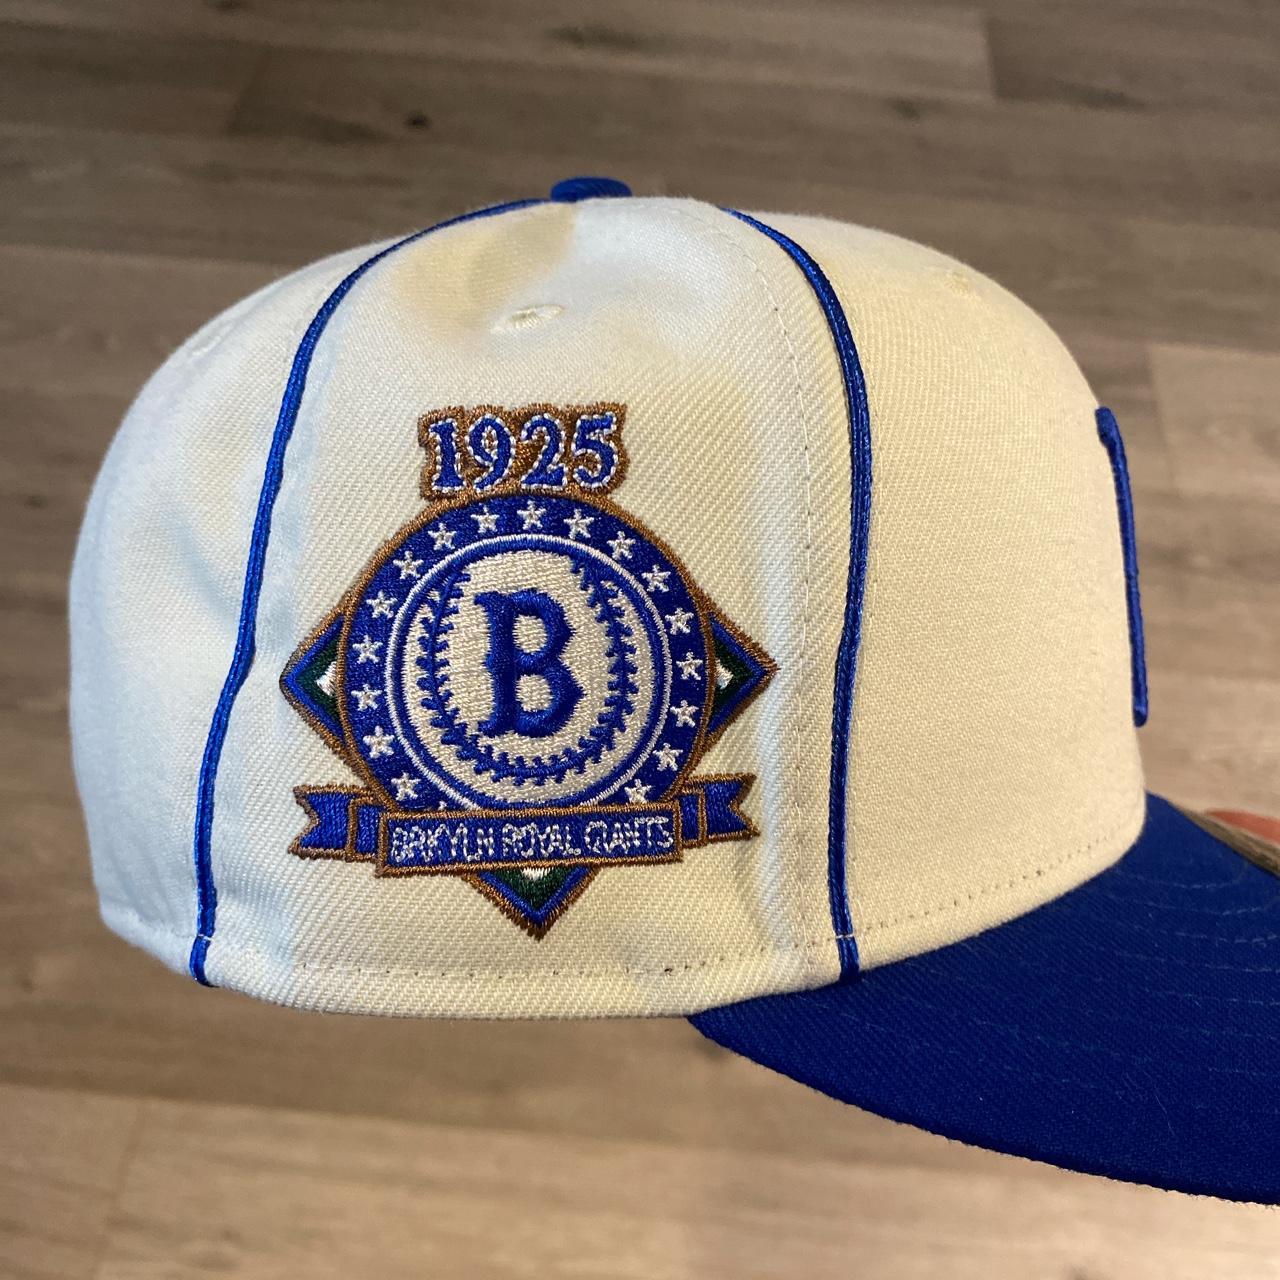 Brooklyn Royal Giants 1925 Vintage Ballcap